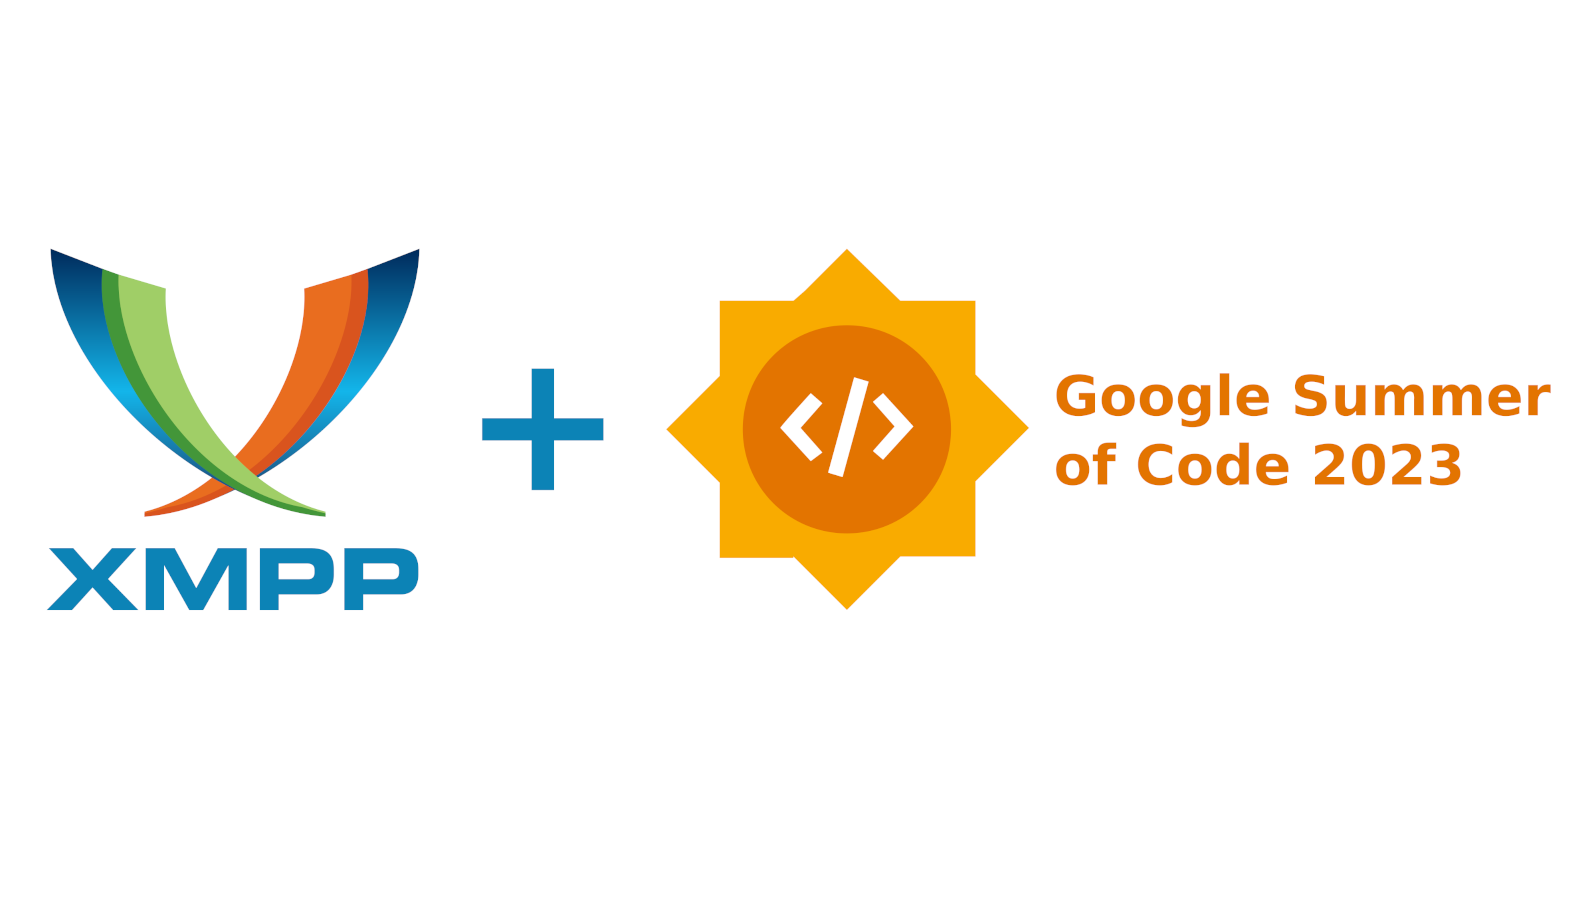 XMPP + Google Summer of Code 2023 Logo